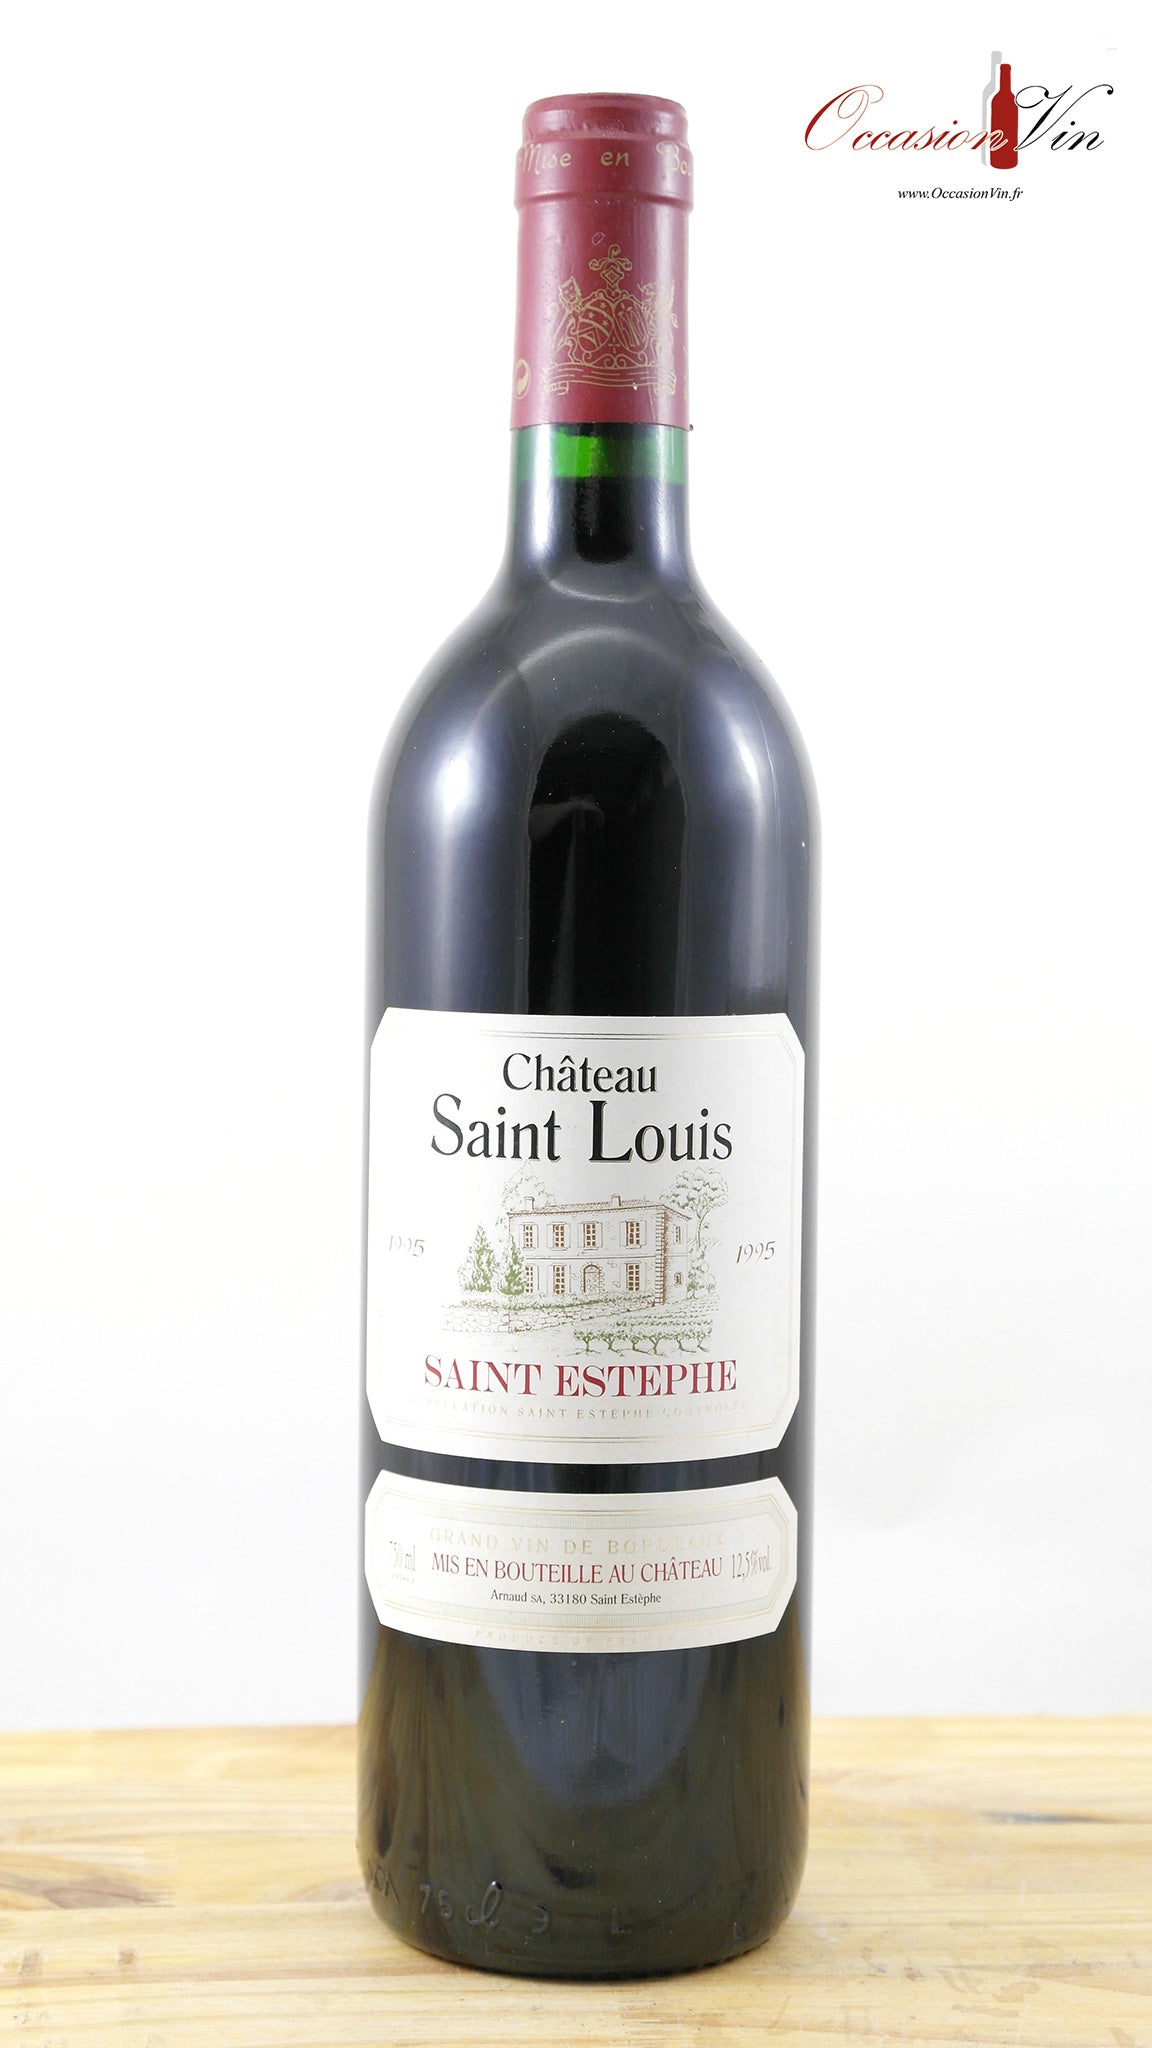 Château Saint Louis Vin 1995